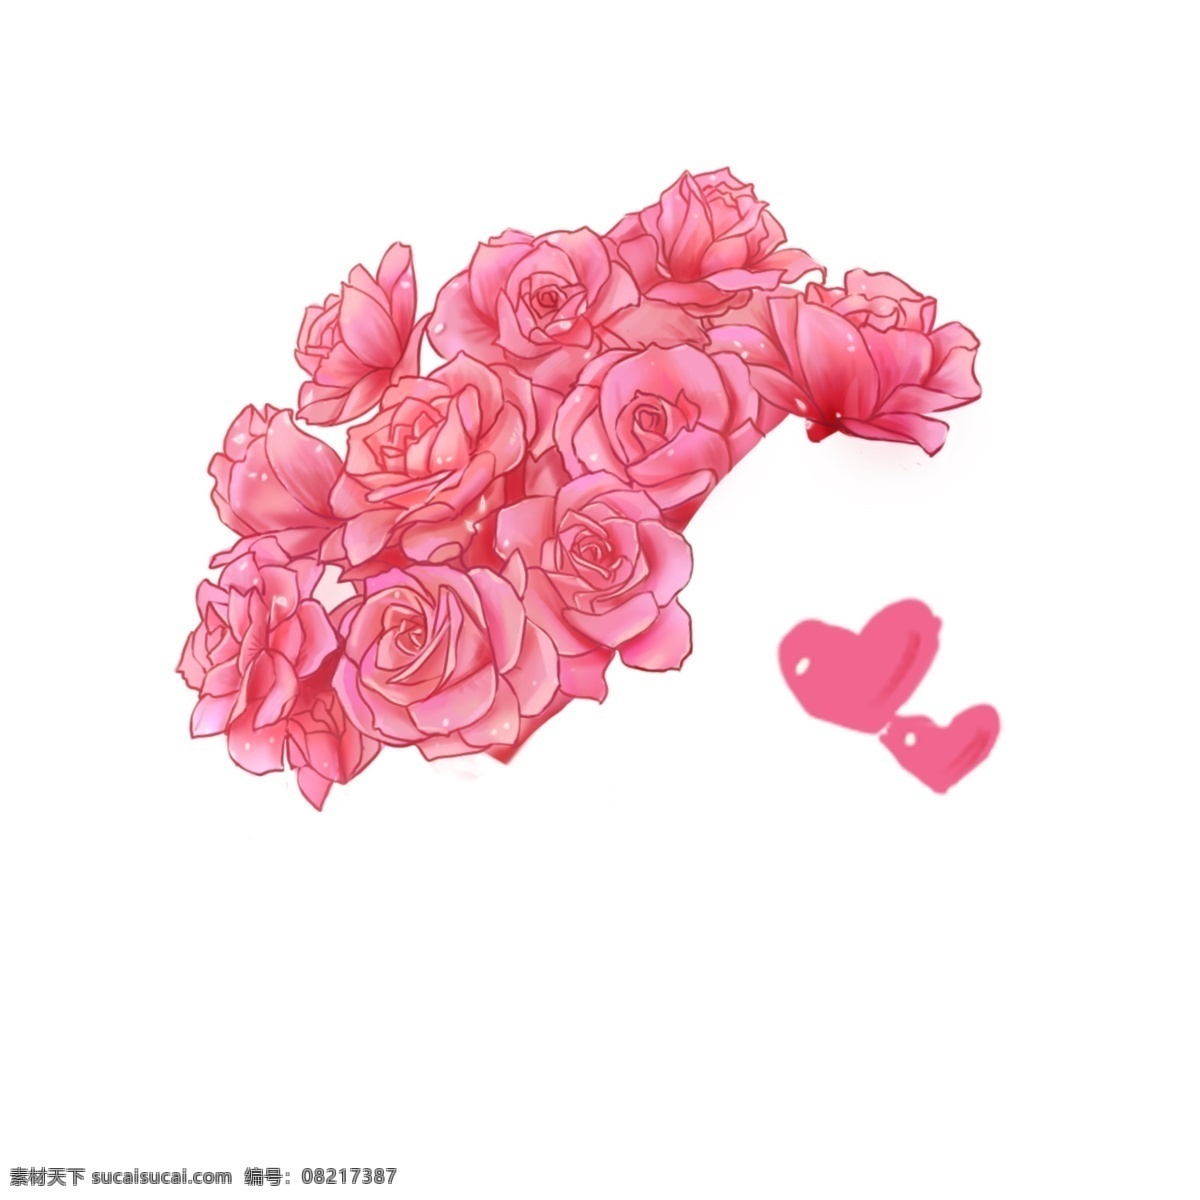 手 捧 玫瑰 手绘 插画 蔷薇 爱情 情人节 恋人 暗恋 水彩 清新 鲜花 花朵 礼物 情调 心情